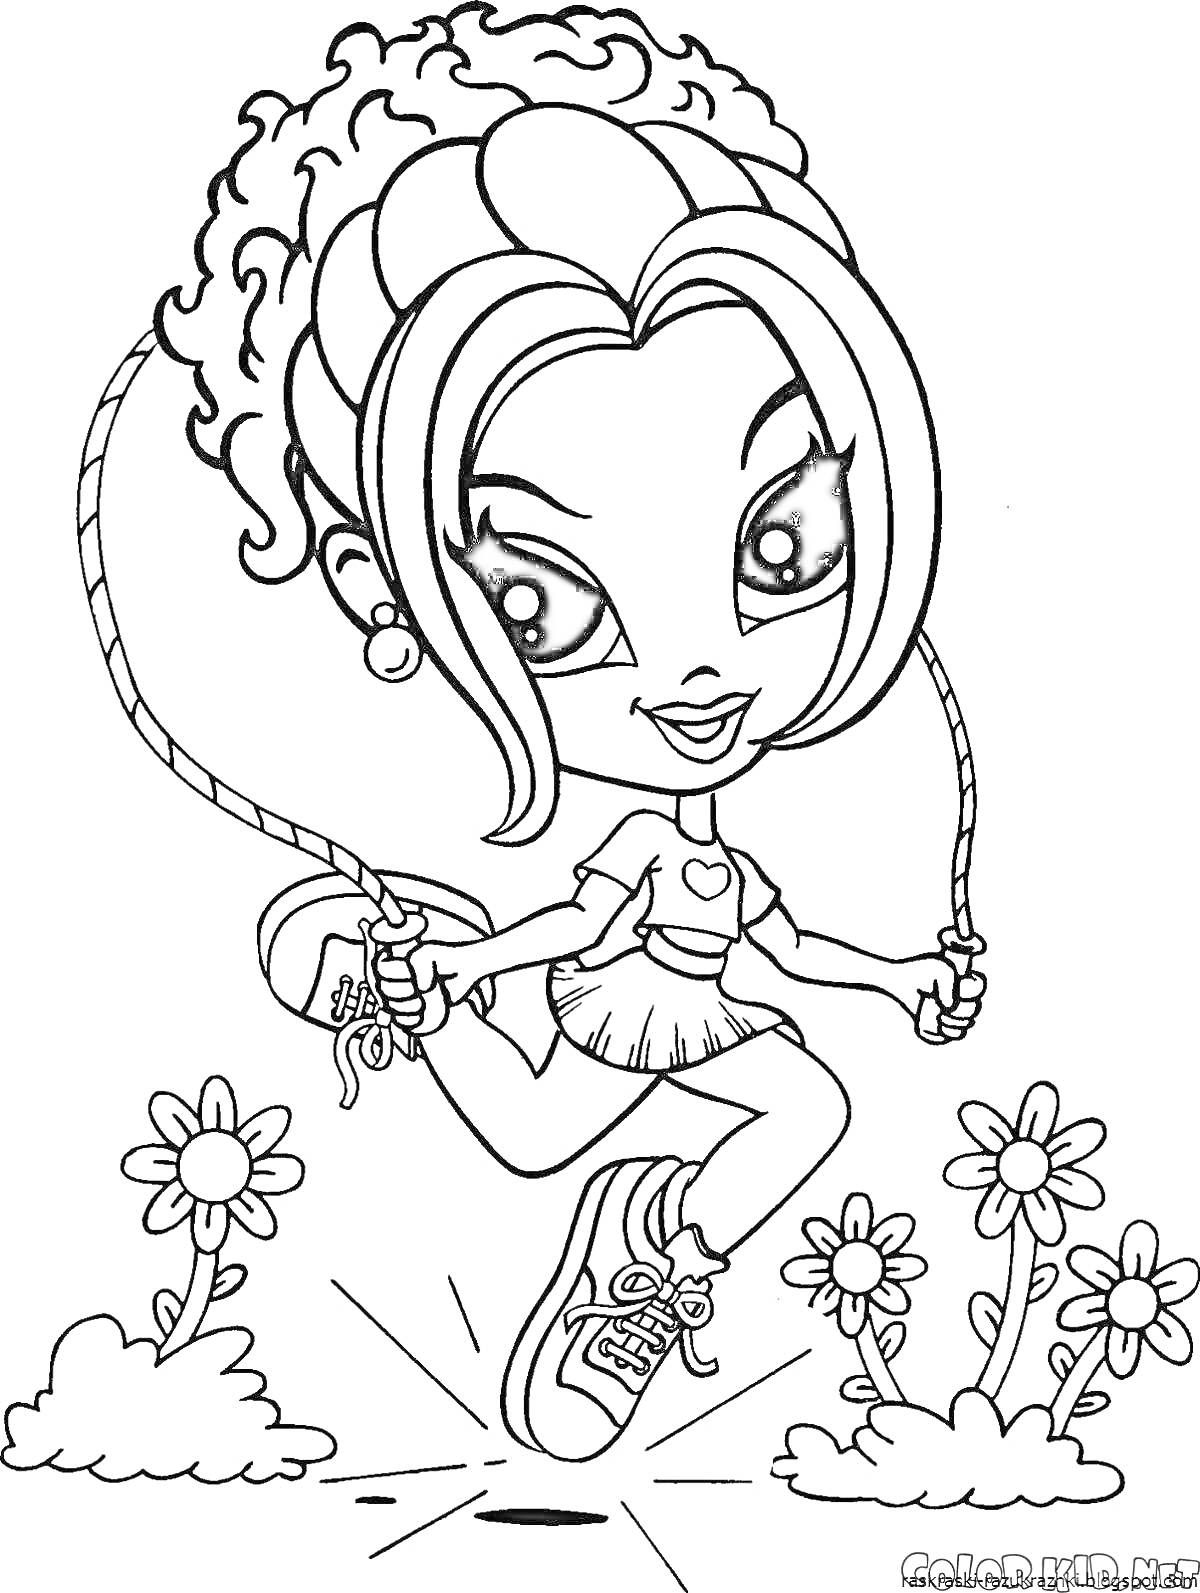 Раскраска Девочка с кудрявыми волосами прыгает через скакалку на фоне цветов